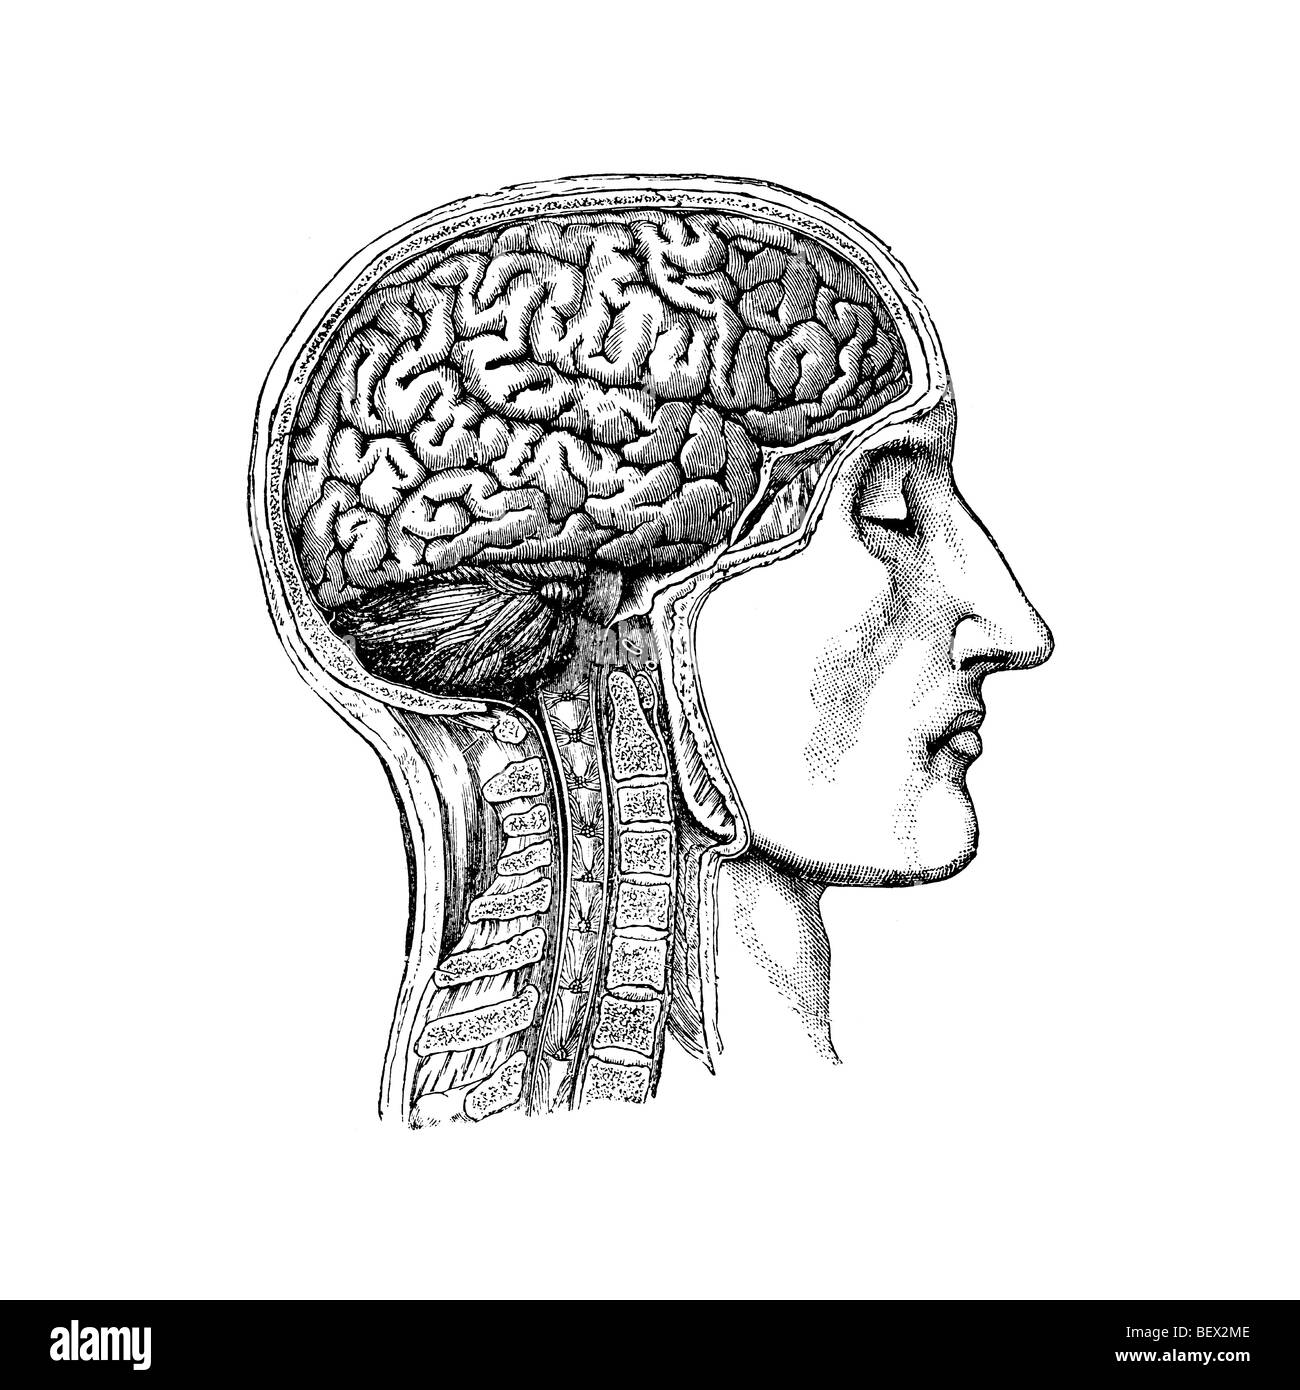 Anatomische Darstellung der menschlichen Kopf und Hals, das das Gehirn mit Schädel wegschneiden Stockfoto